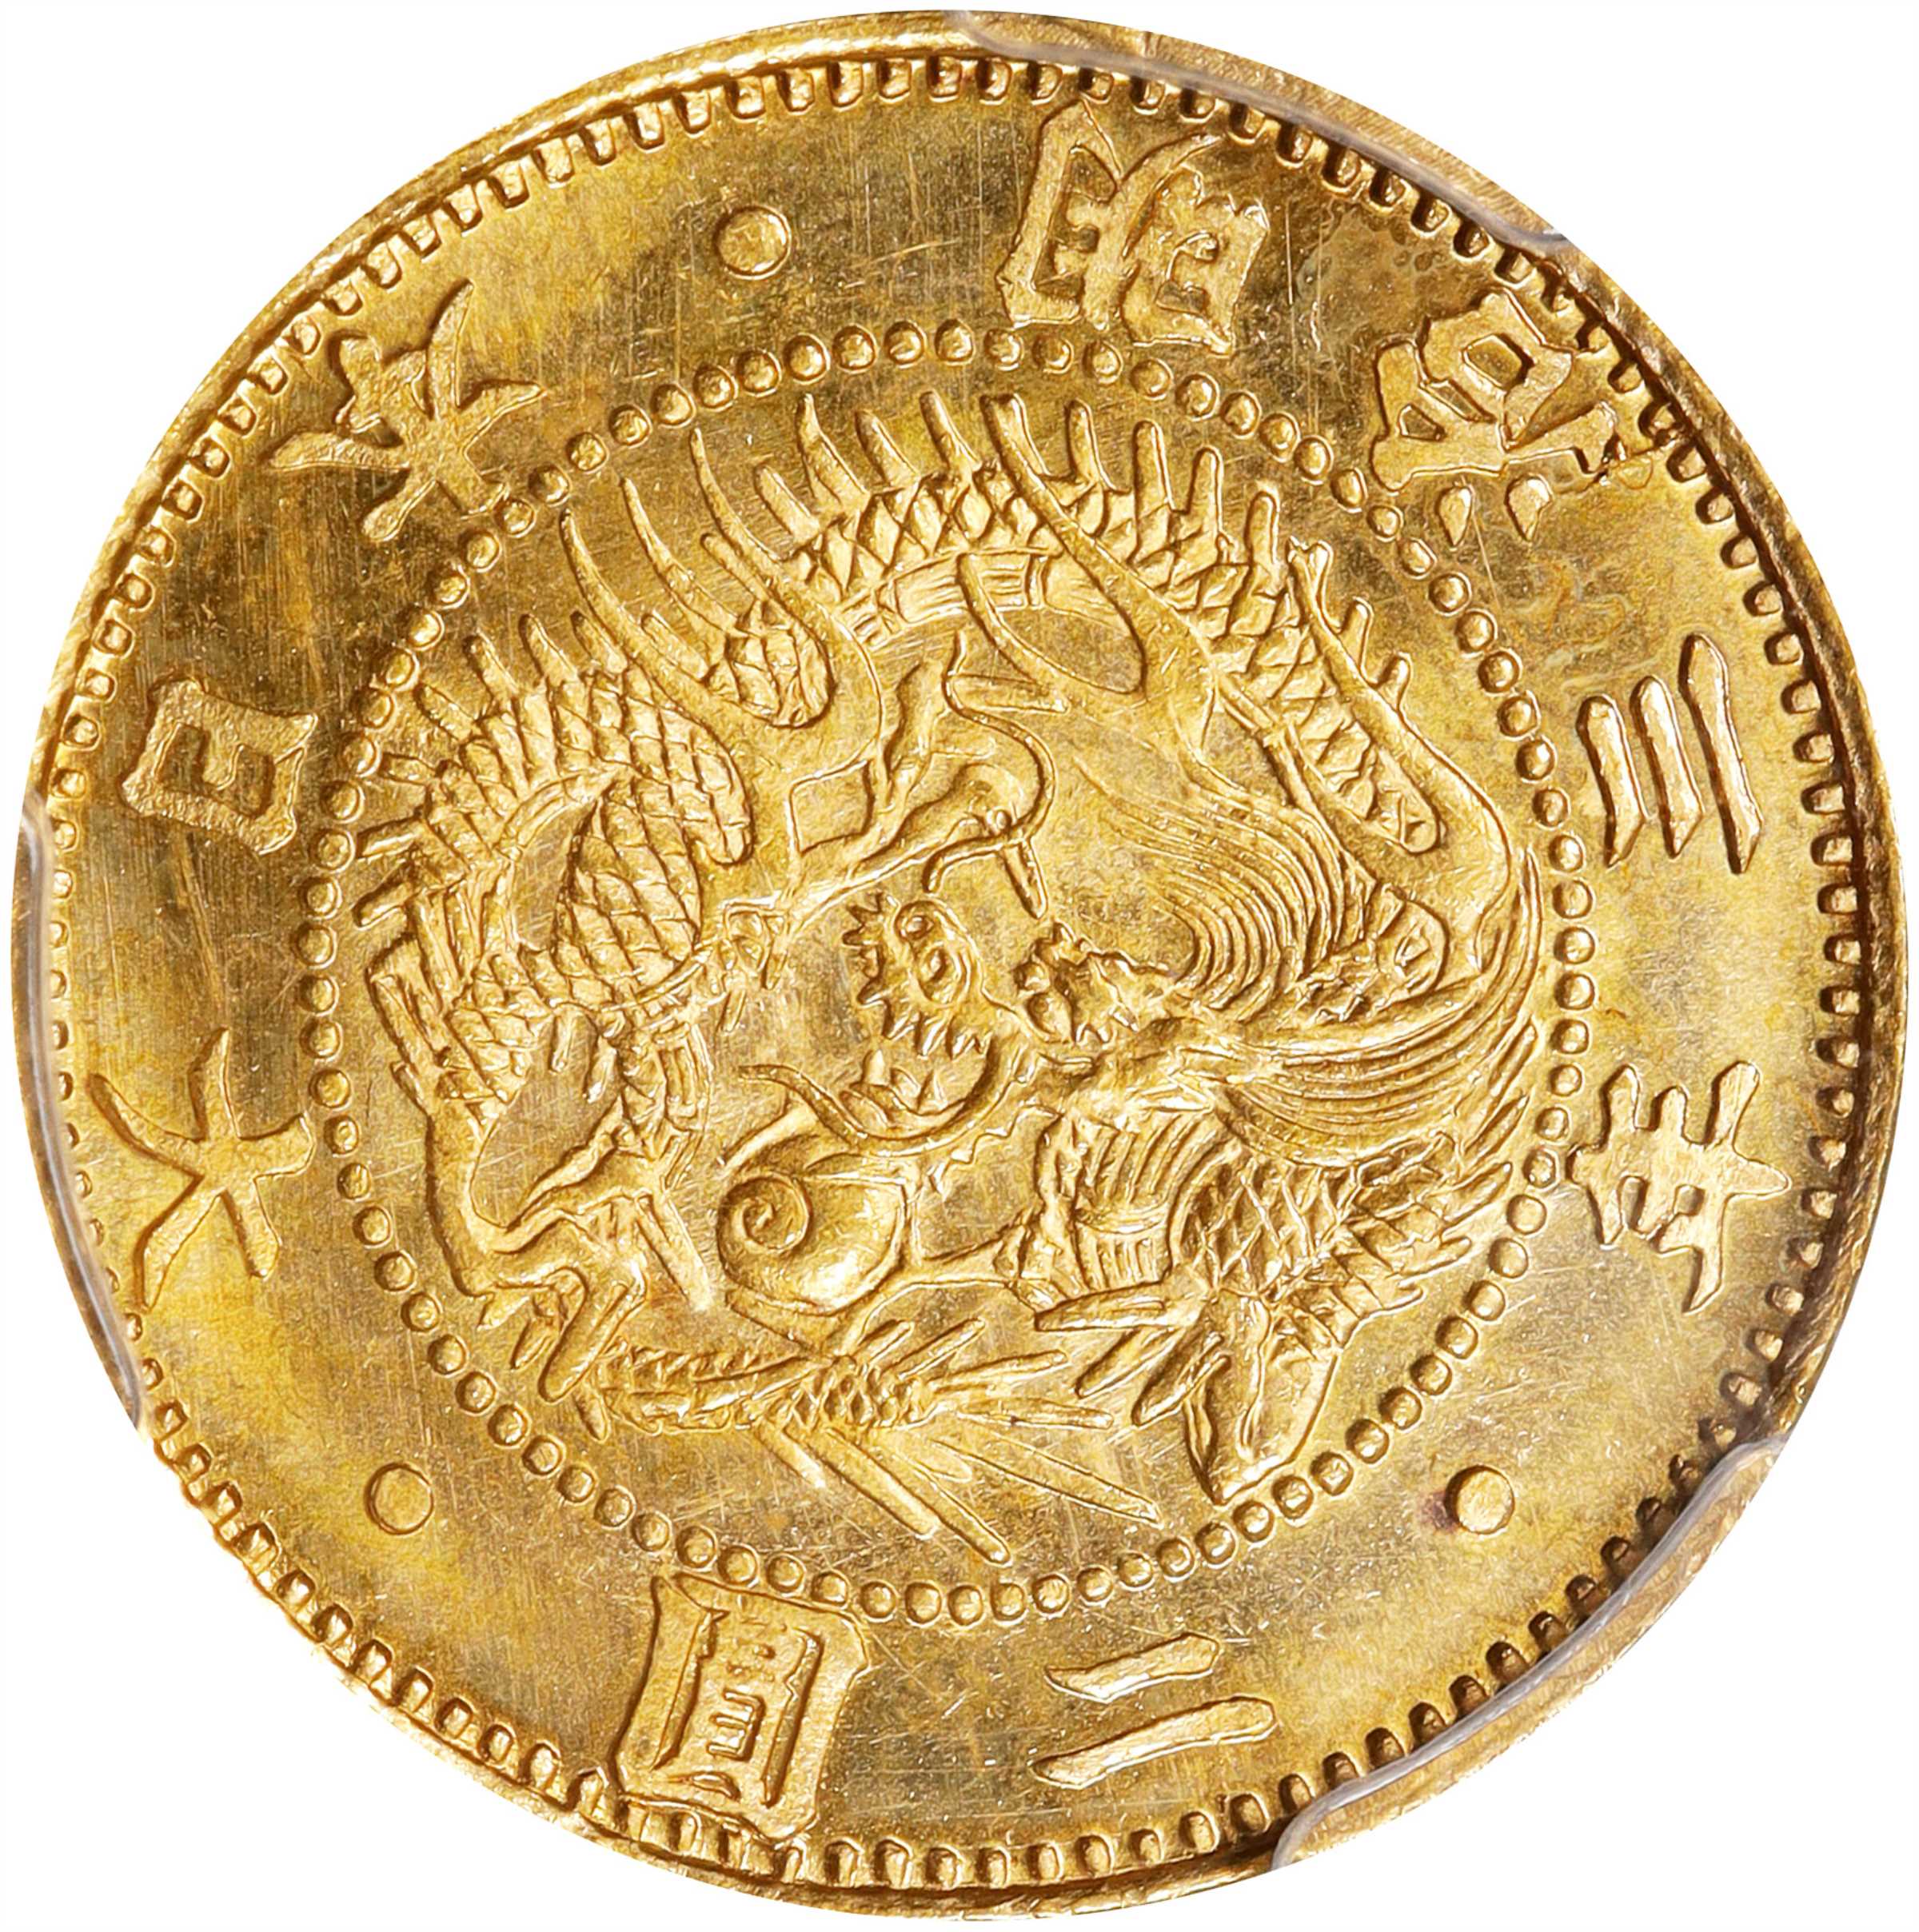 JAPAN. 2 Yen, Year 3 (1870). Osaka Mint. Mutsuhito (Meiji). PCGS 